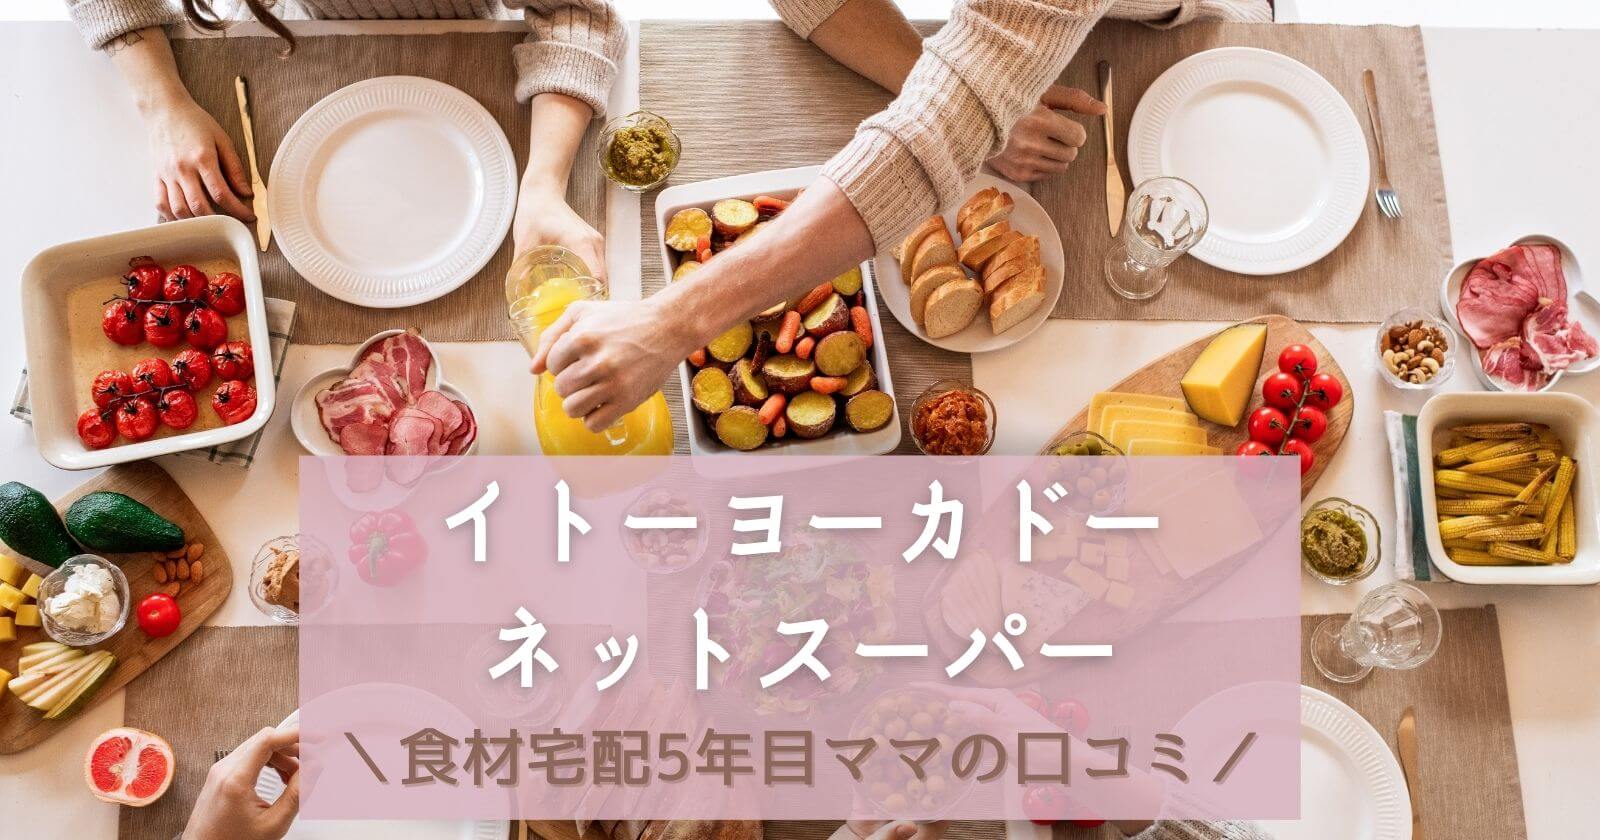 イトーヨーカドーネットスーパーを口コミ評価食材宅配利用歴5年ママのブログ紹介